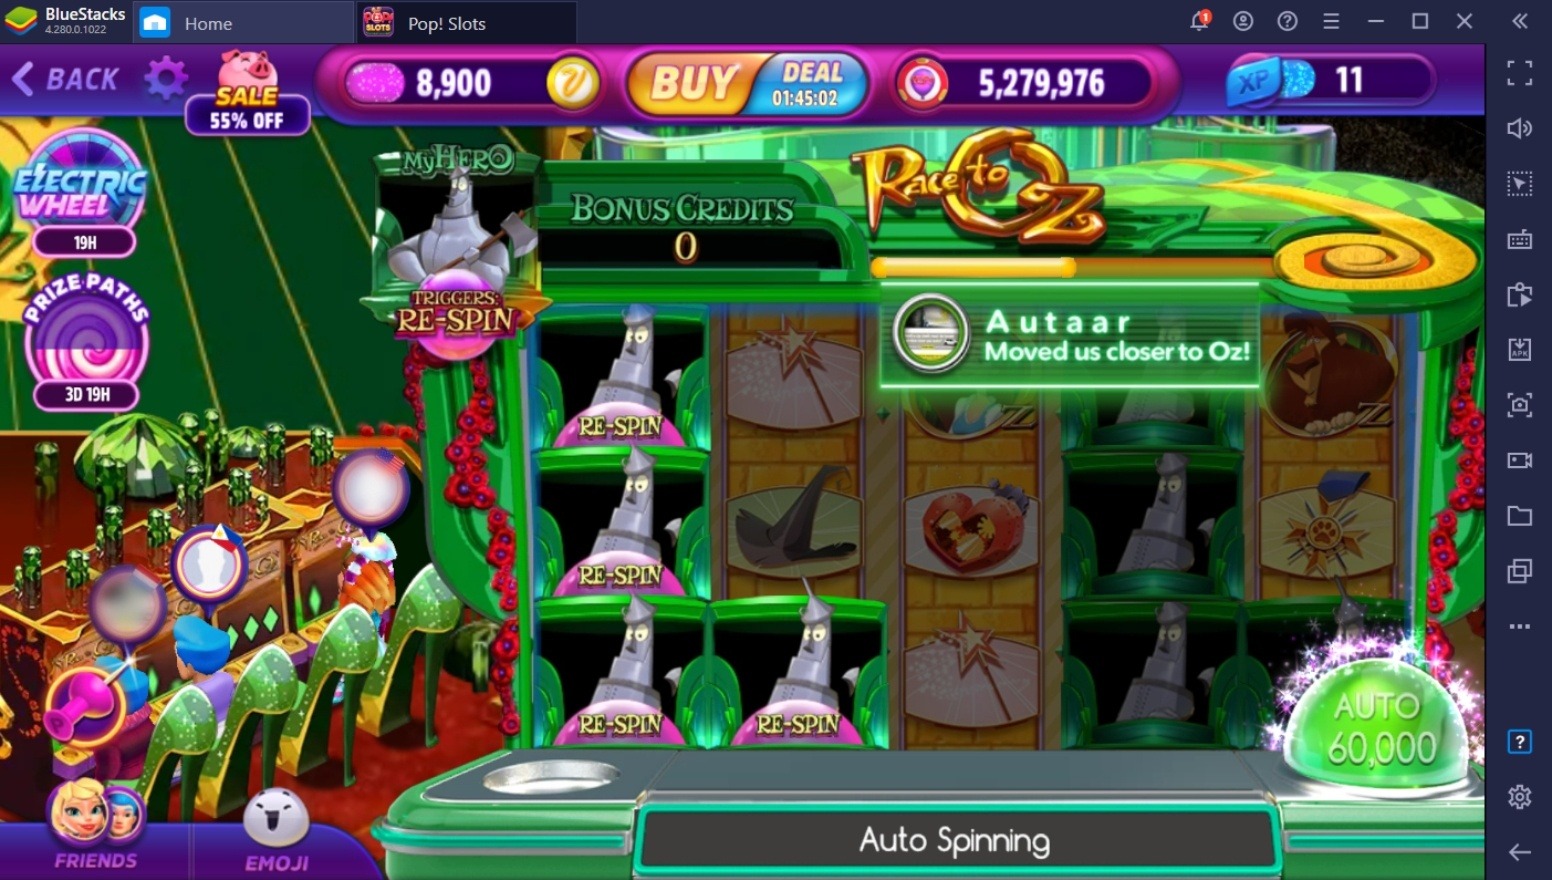 Tips & Trik POP! Slots Vegas Casino Games Untuk Membantu Kamu Menang Lebih Banyak